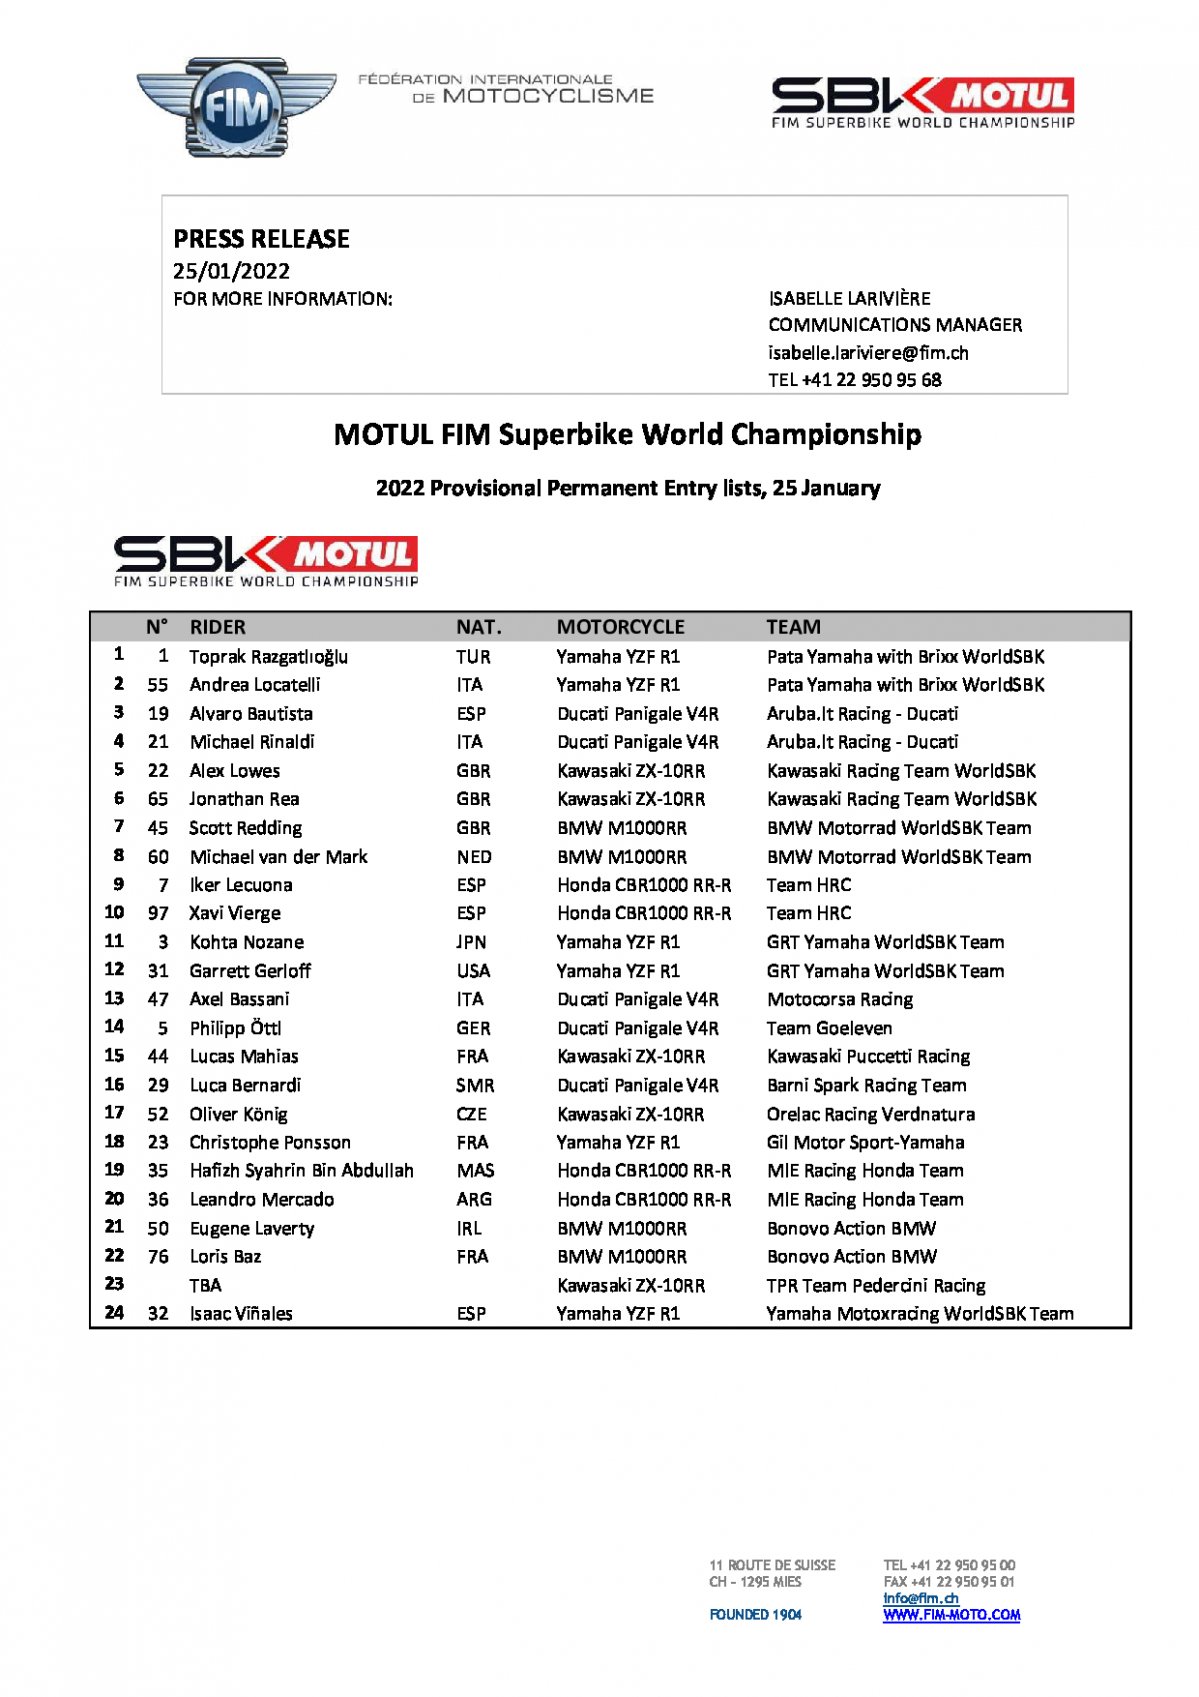 Список участников World Superbike 2022 года (предварительный) от 26 января